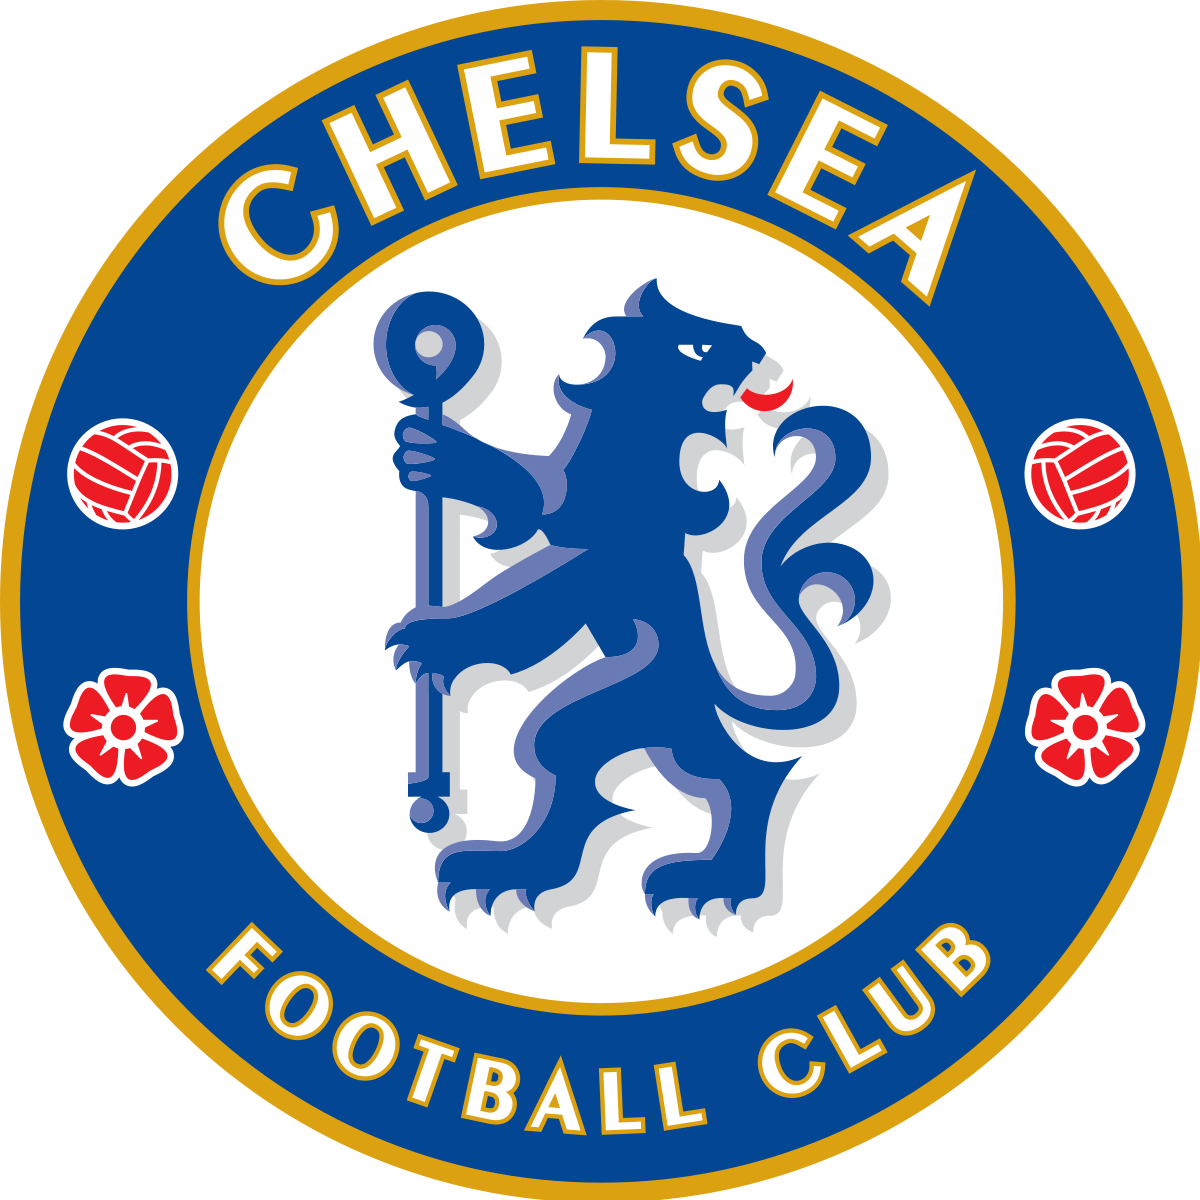 Soccer Crest Logo - Chelsea F.C.